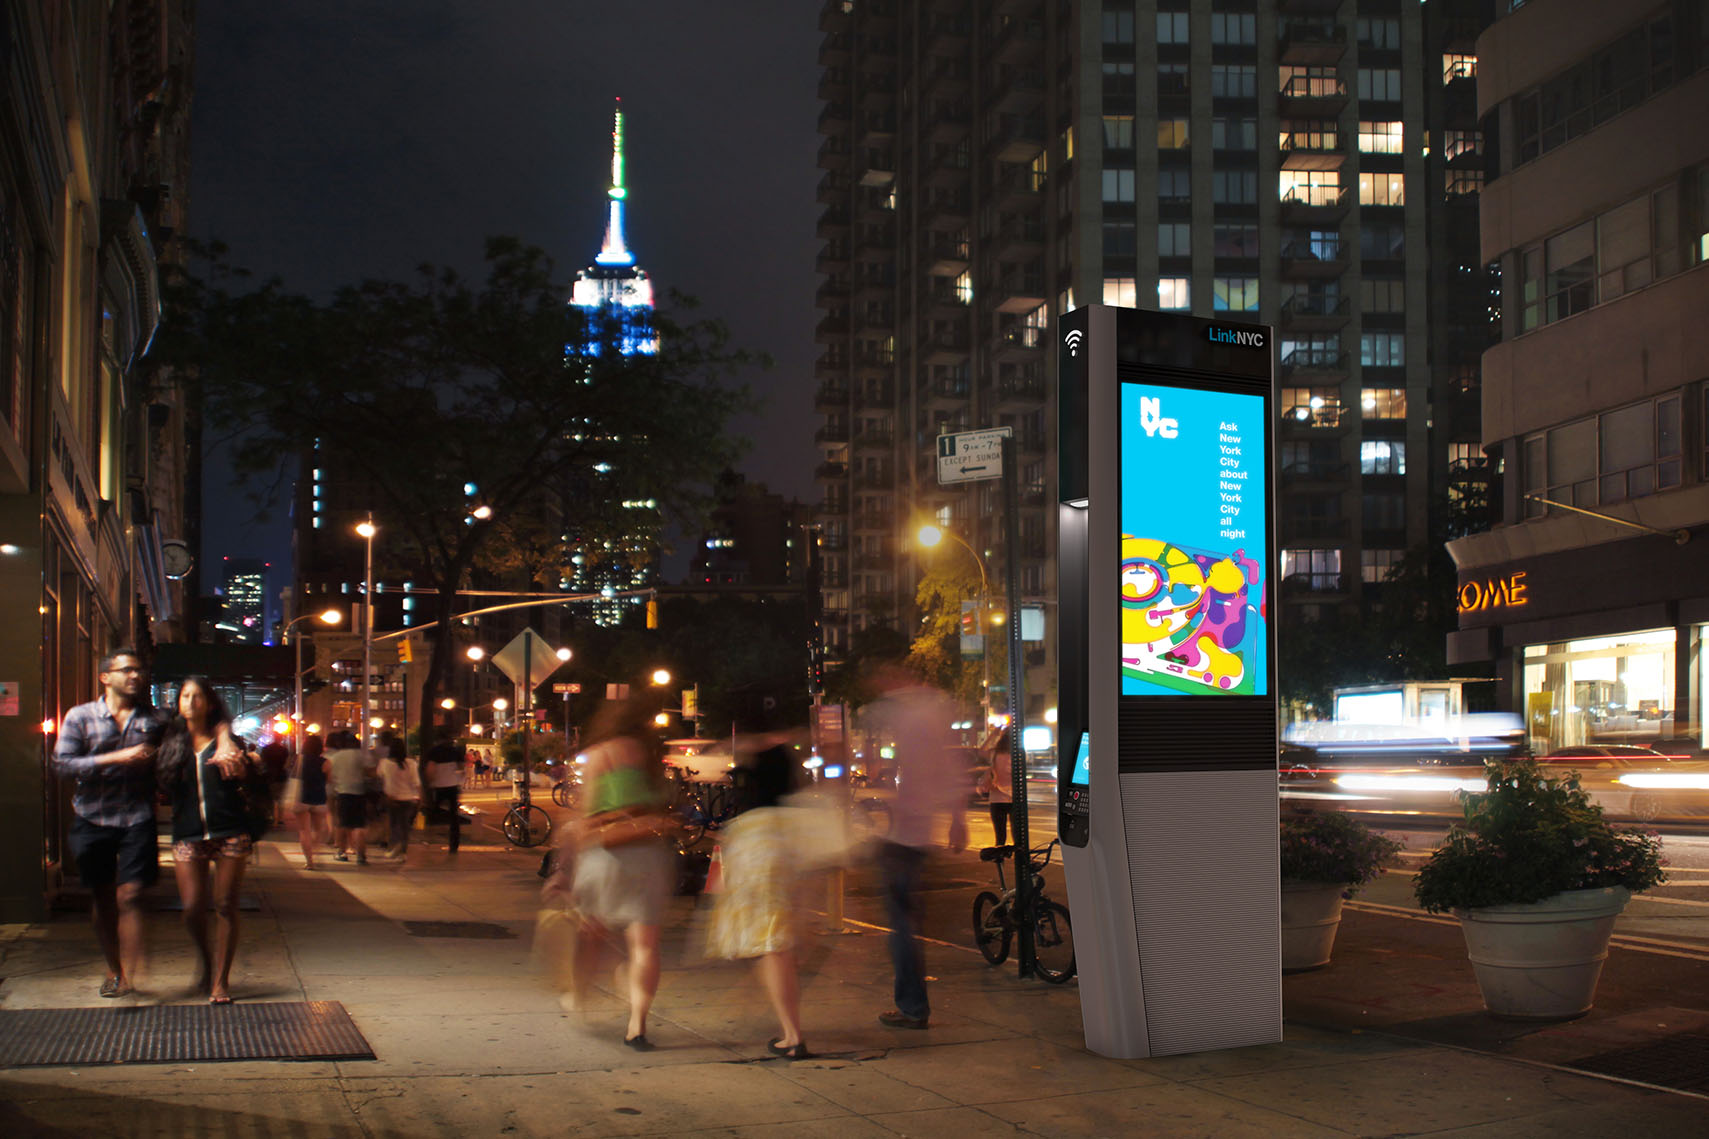 Google NYC Tech Talk - Sidewalk Labs